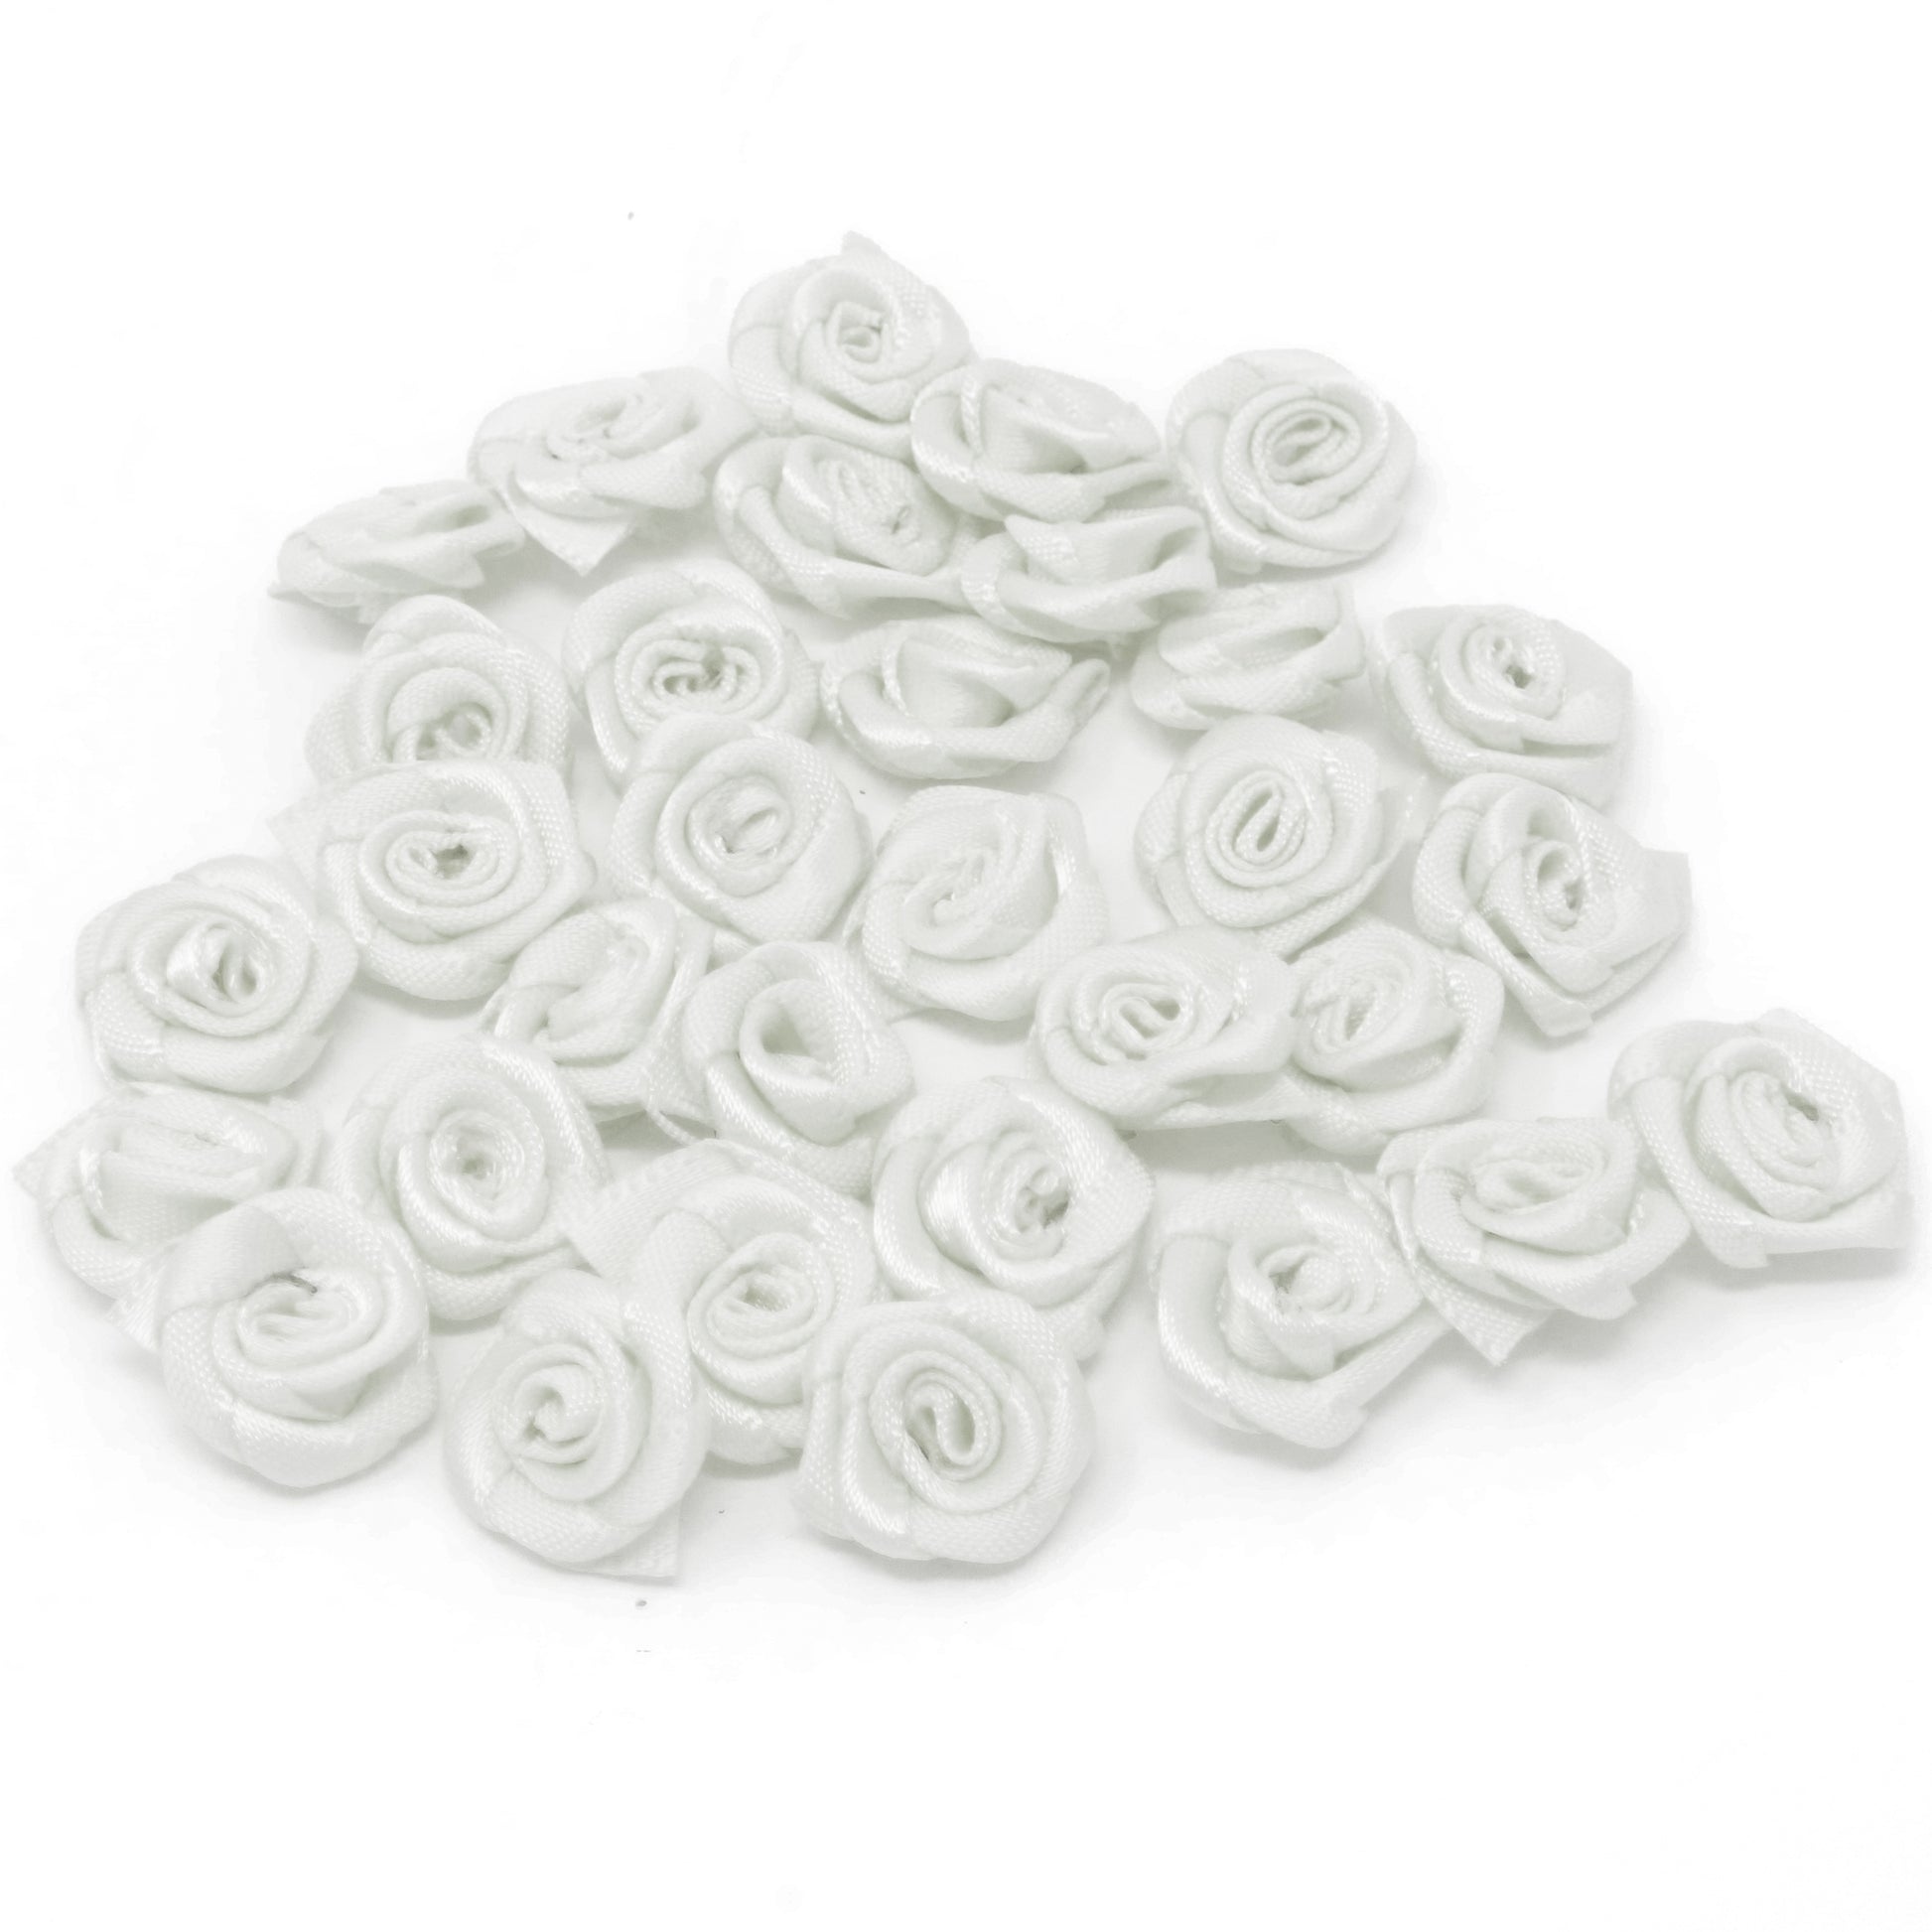 White 15mm Miniature Satin Ribbon Roses